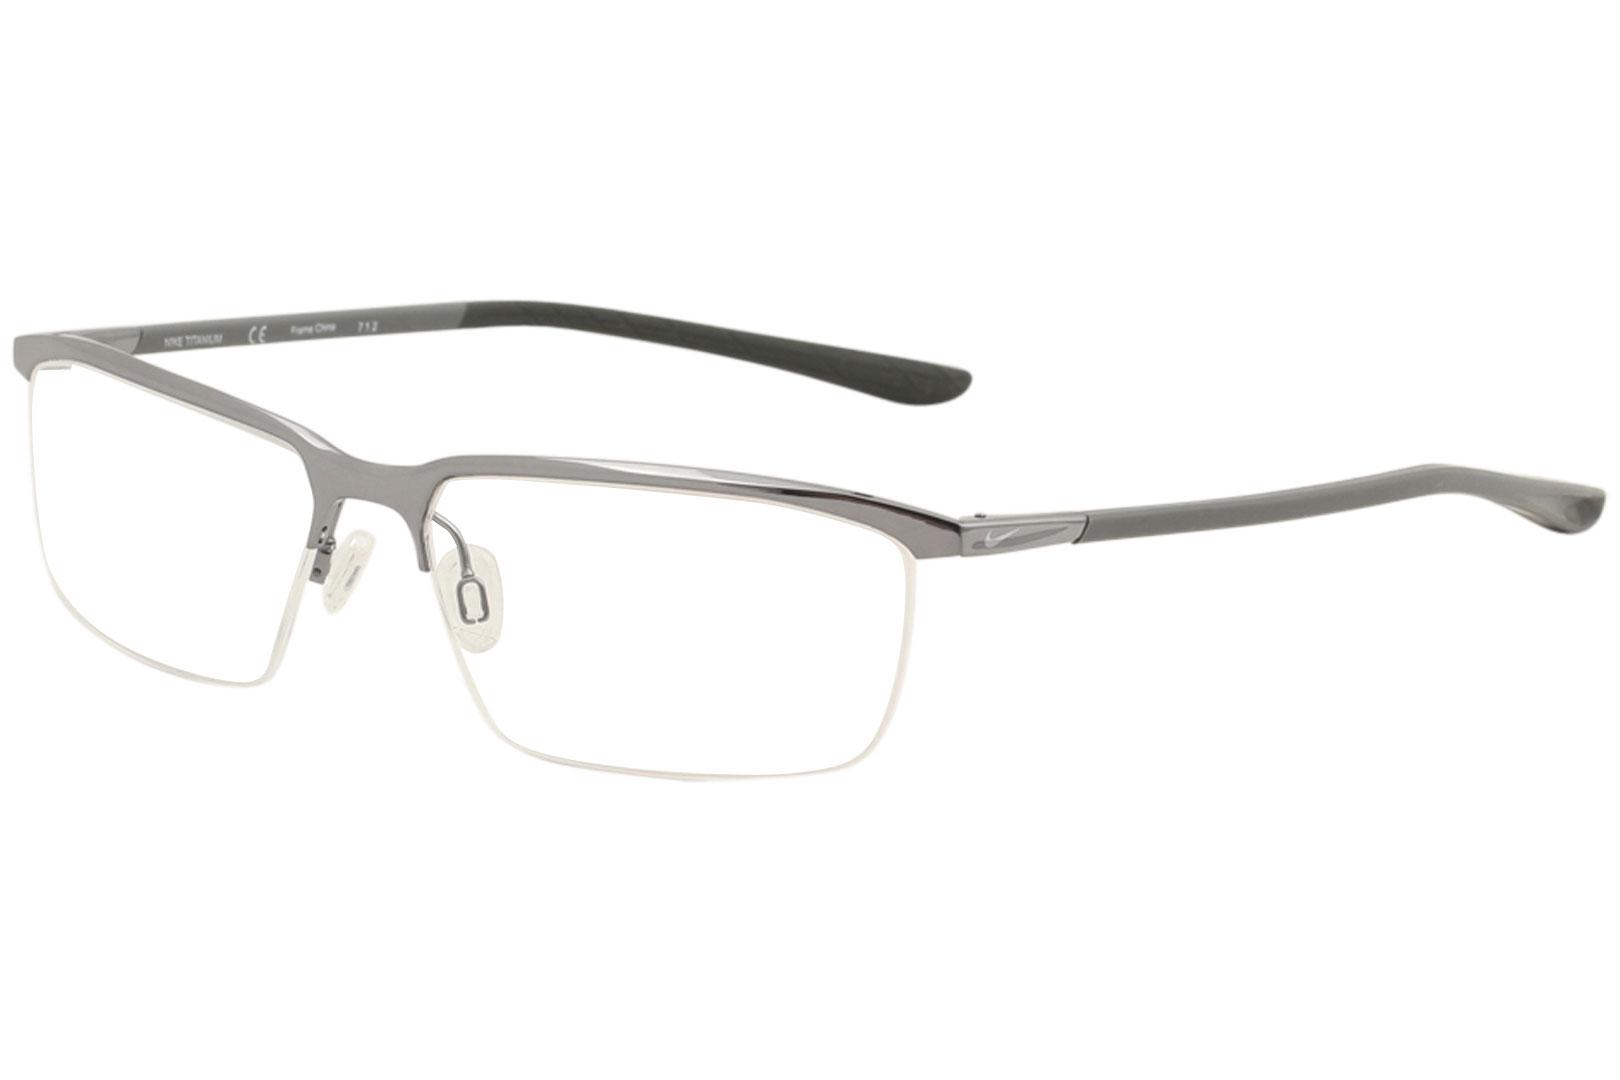 Men's Eyeglasses Half Rim Optical Frame | EyeSpecs.com